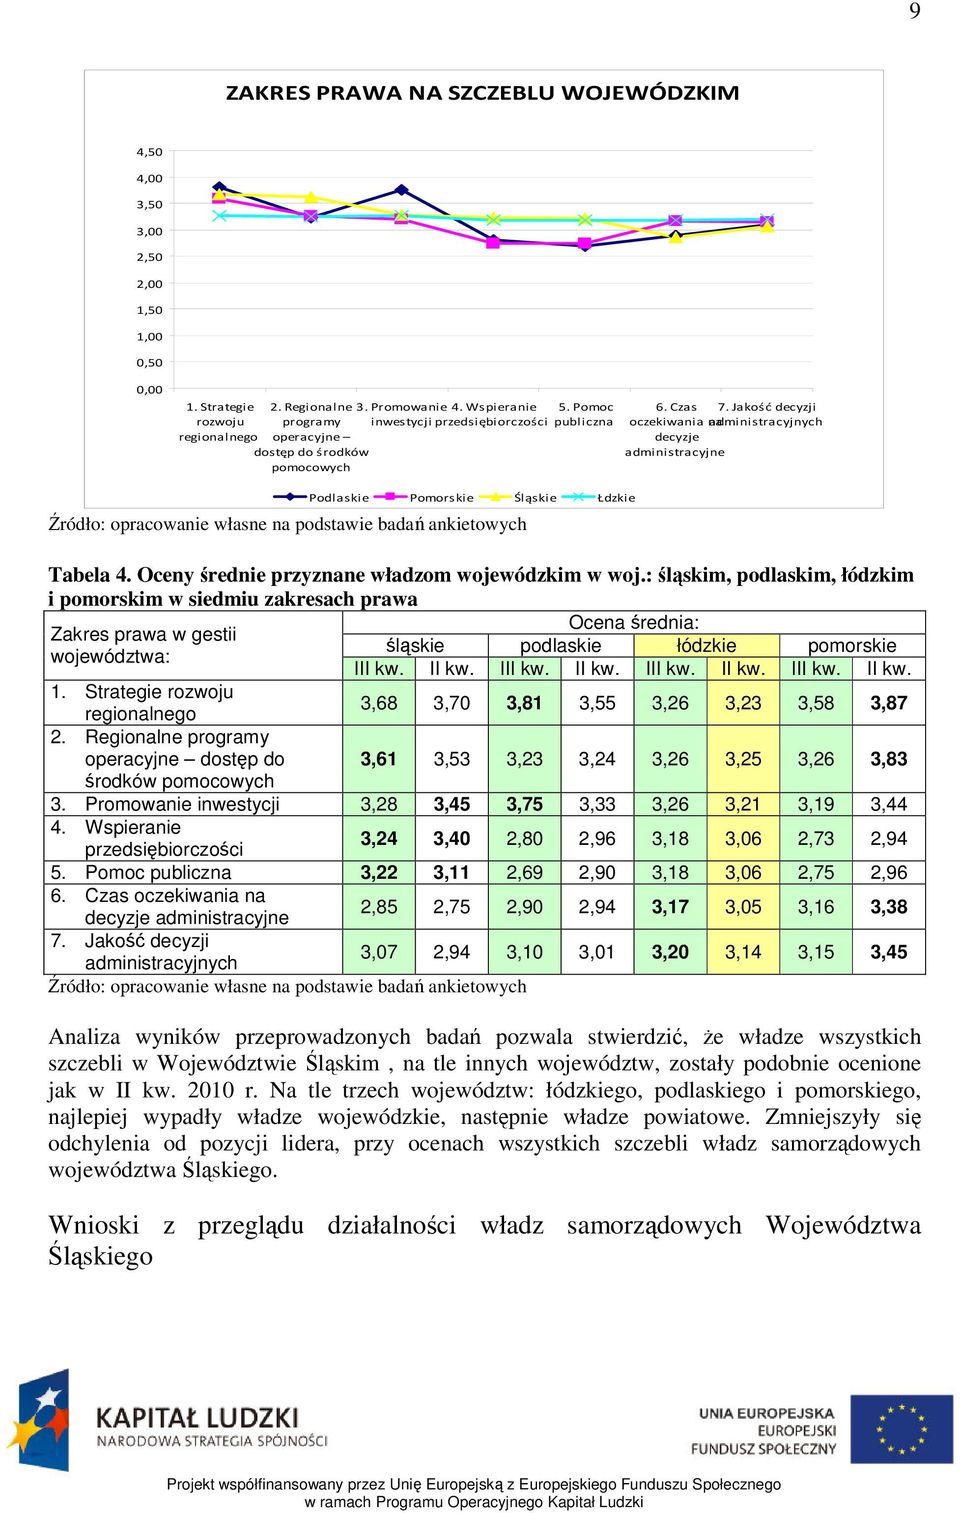 Jakość decyzji oczekiwania na administracyjnych decyzje administracyjne Podlaskie Pomorskie Śląskie Łdzkie Źródło: opracowanie własne na podstawie badań ankietowych Tabela 4.